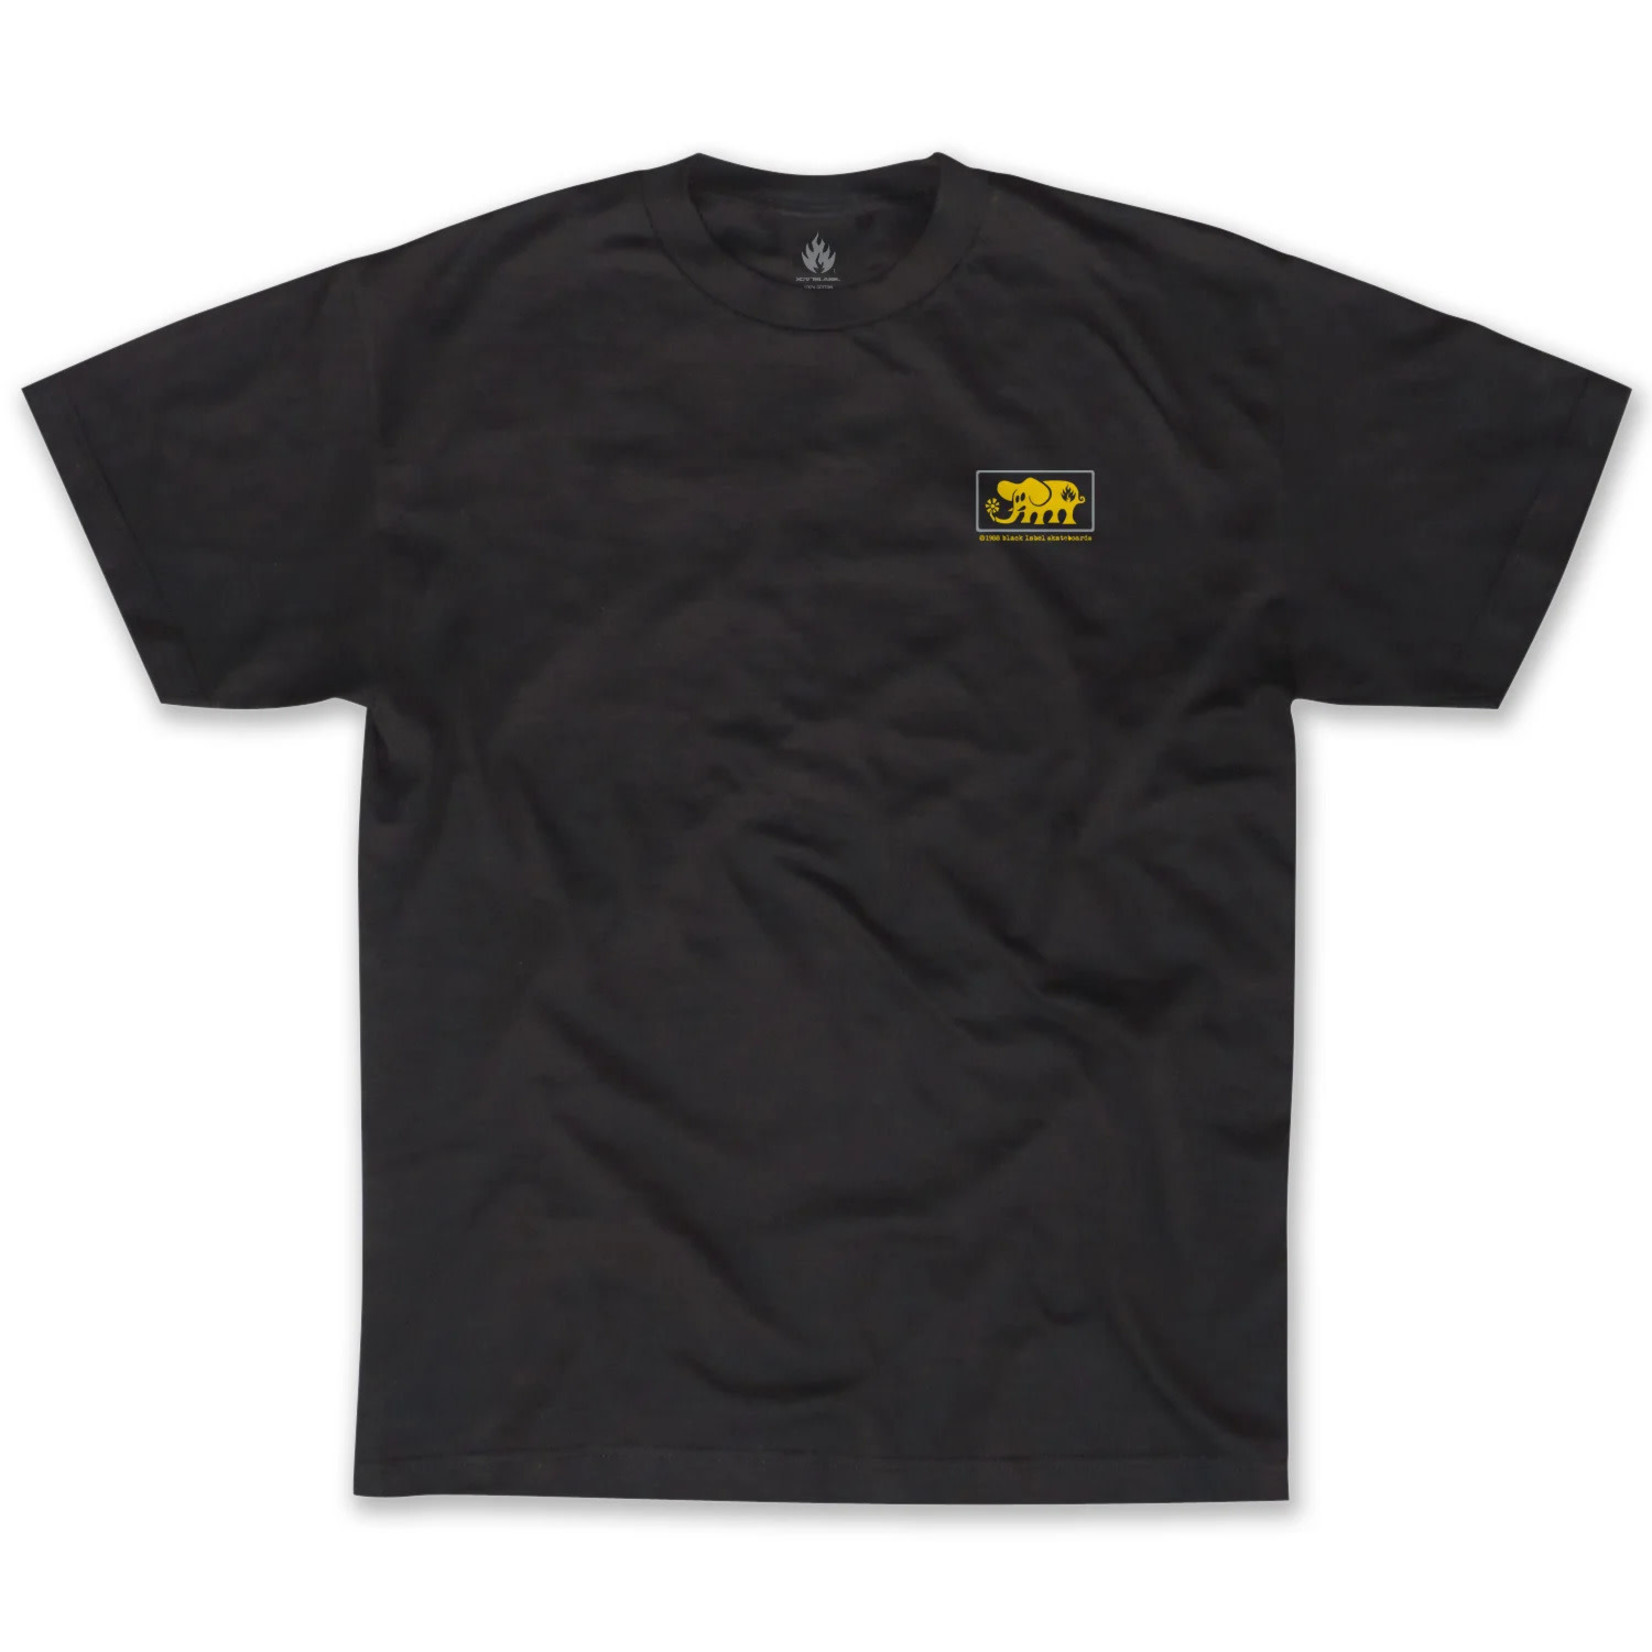 Black Label Black Label Elephant Framed T-Shirt -  Black